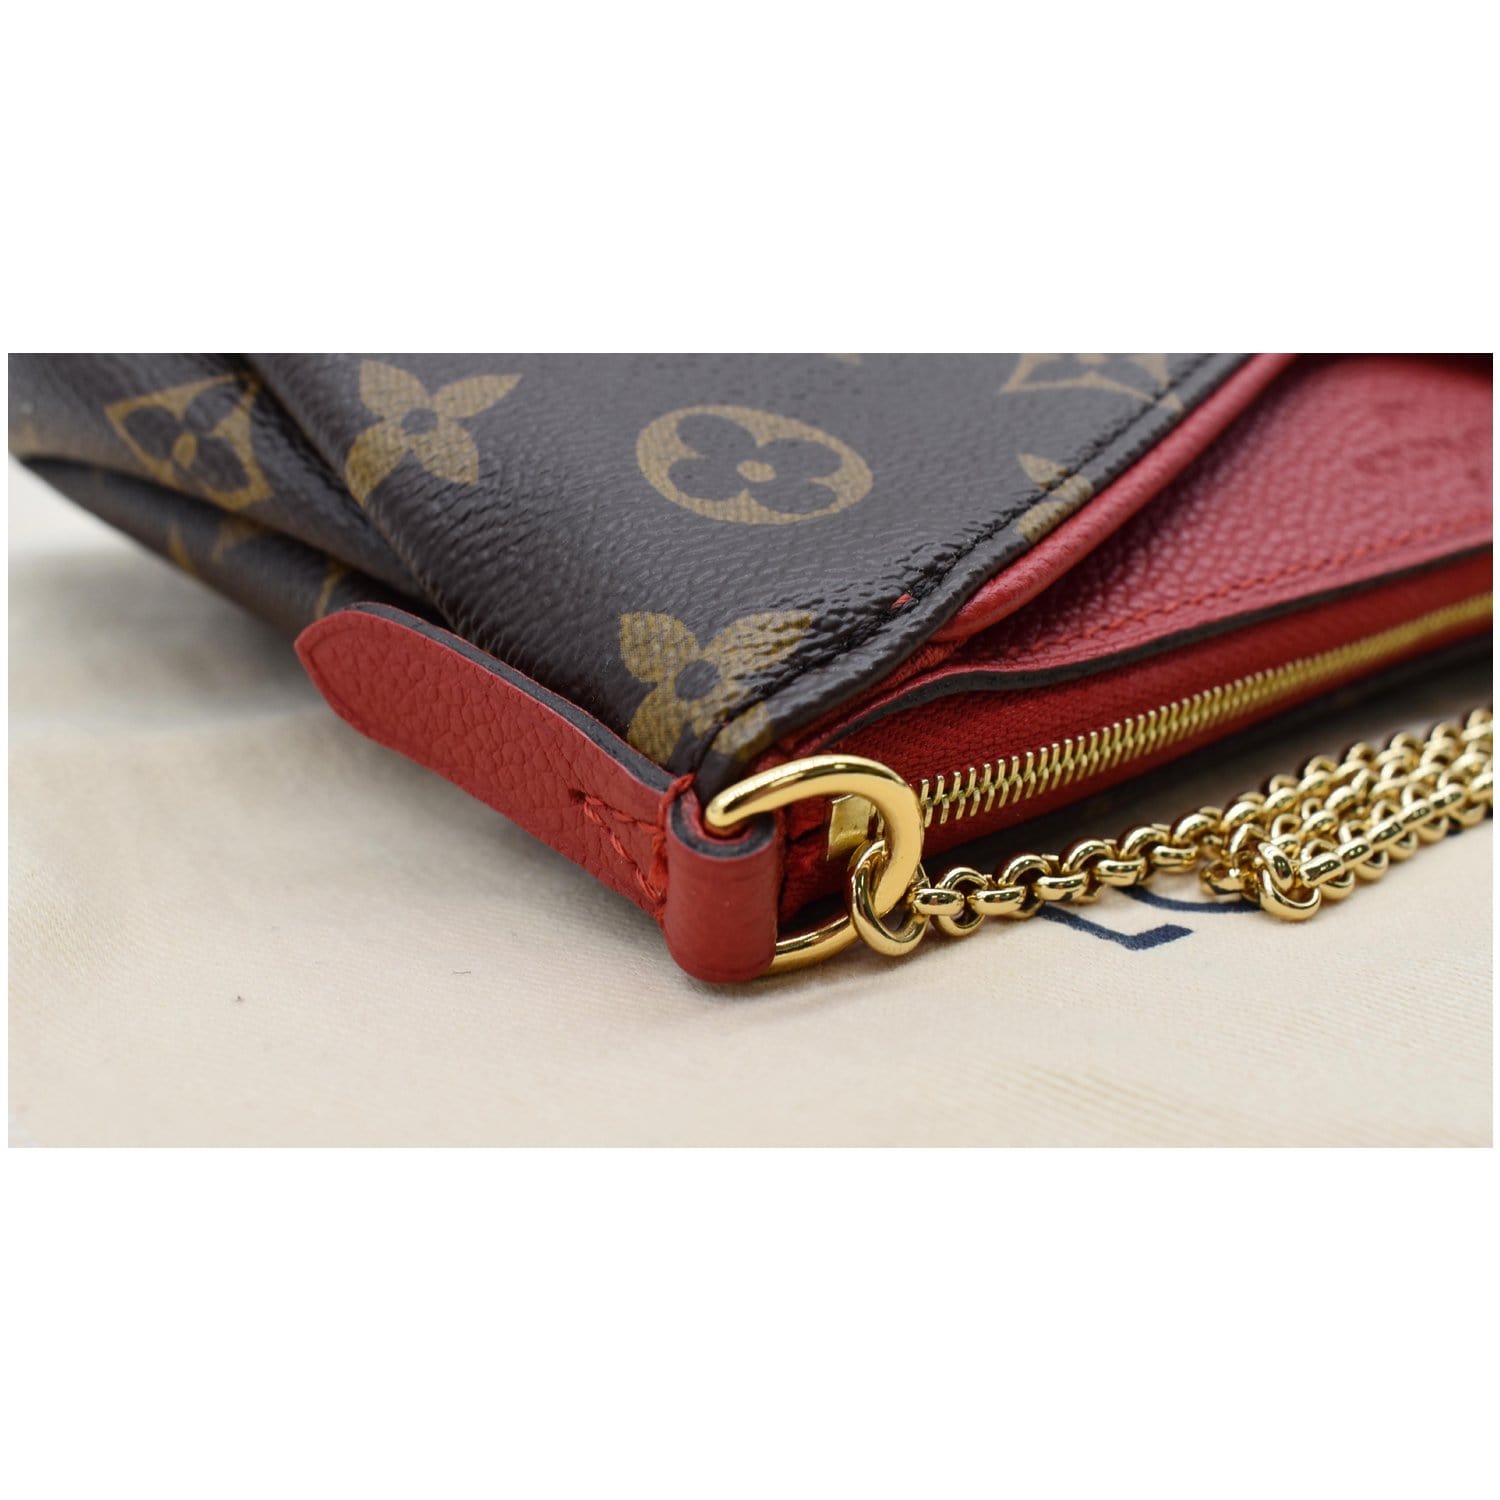 Louis-Vuitton-Monogram-Pallas-Clutch-2Way-Bag-Cerise-M41638